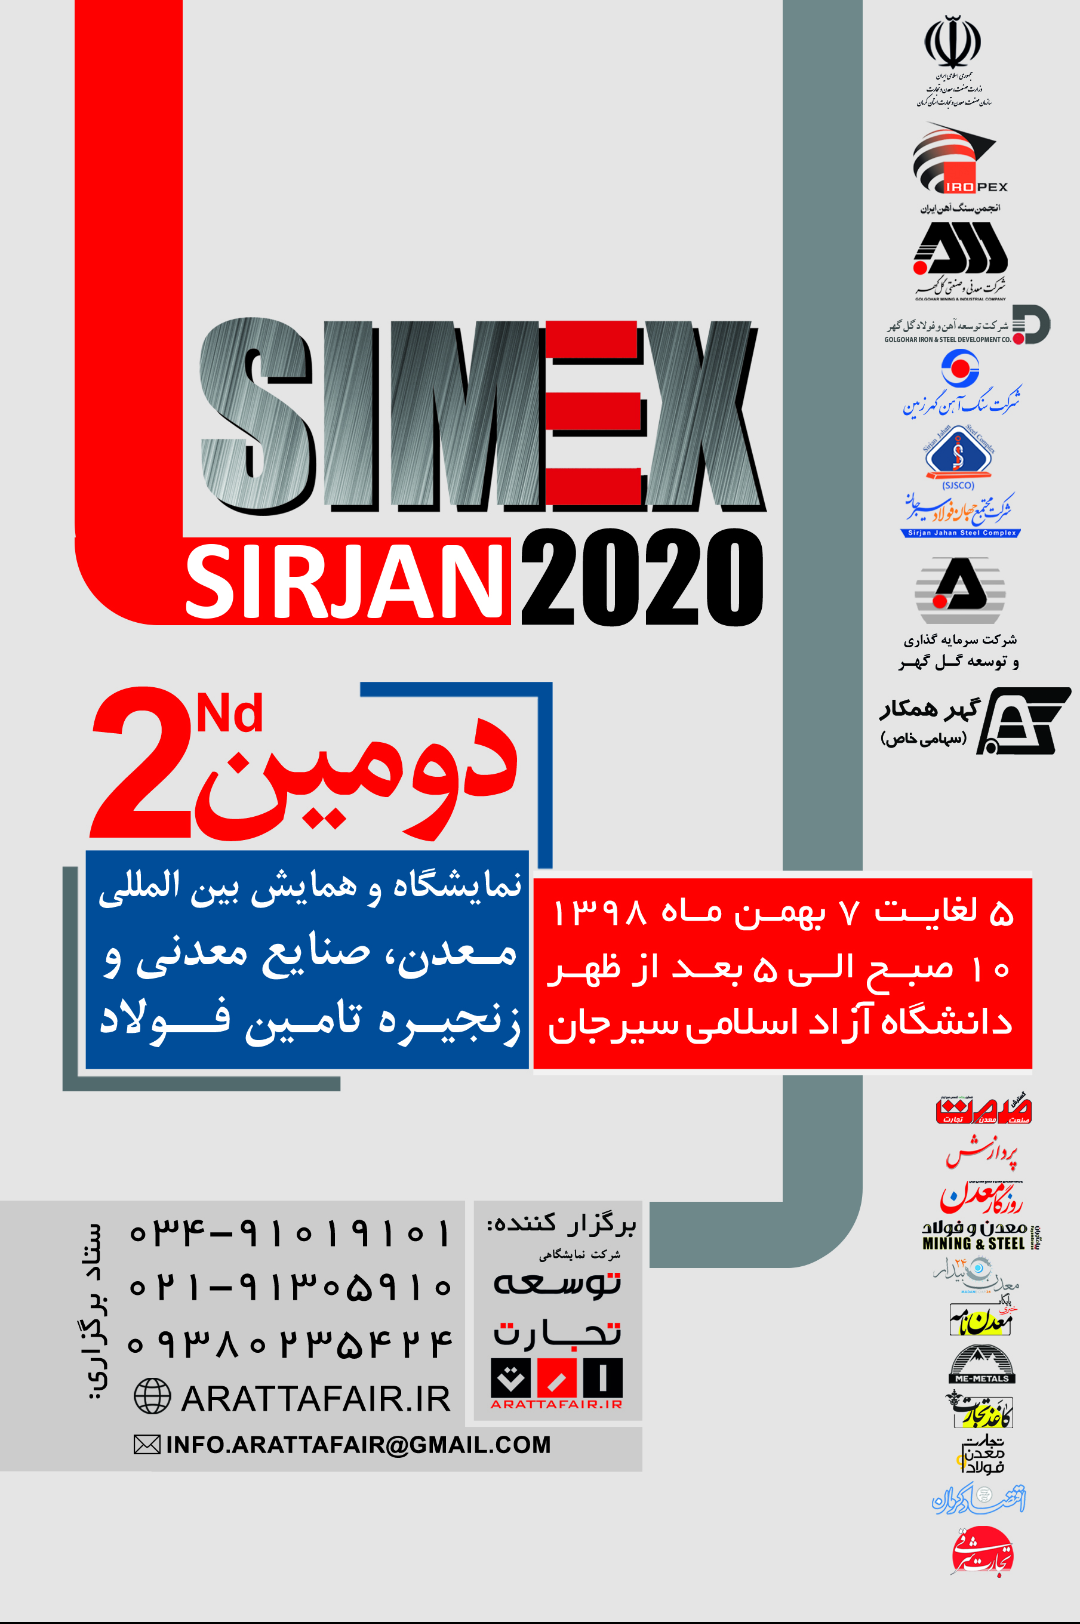 کرمان برای دومین سال میزبان نمایشگاه بین المللی سیمکس خواهد بود